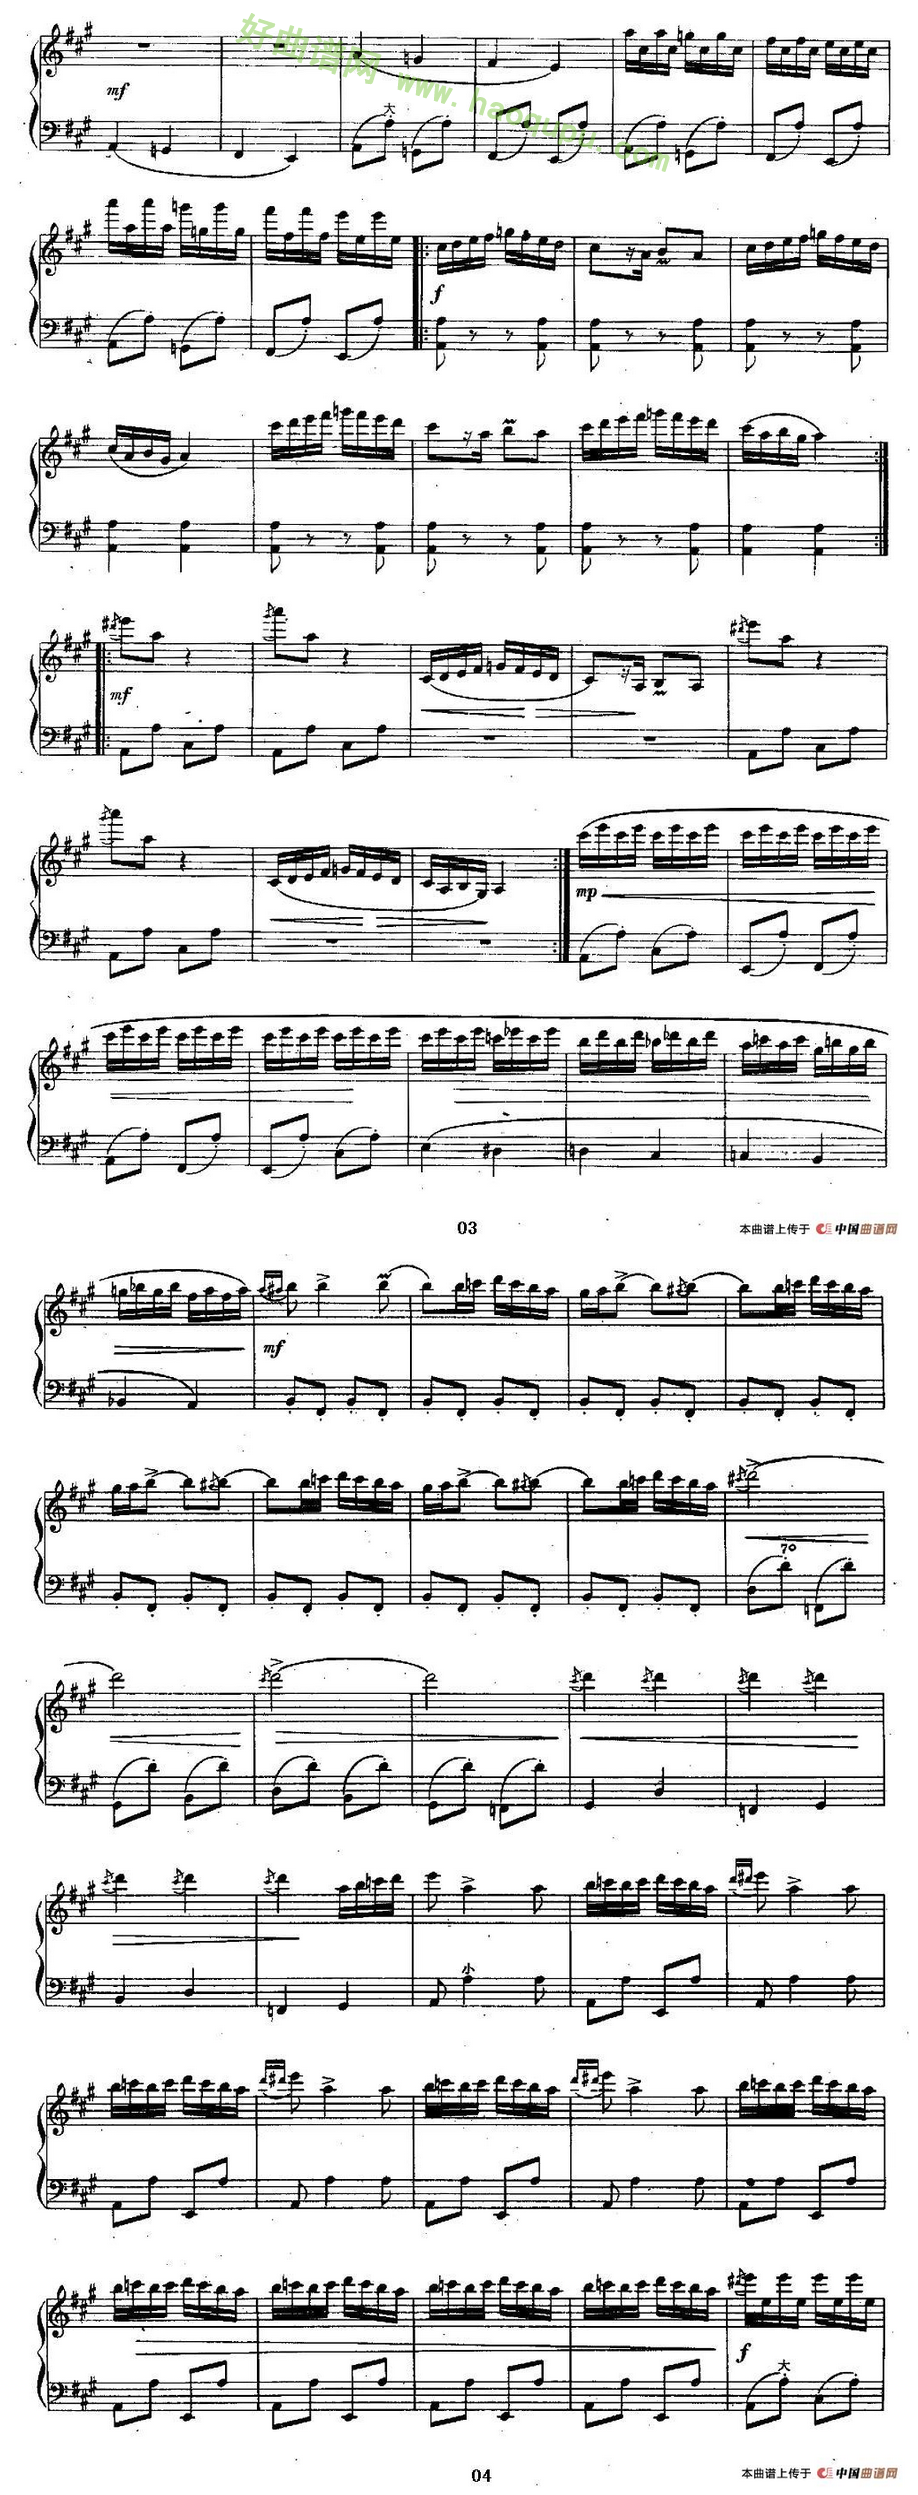 《云雀》（罗马尼亚民间乐曲、陈志改编版）手风琴曲谱第1张